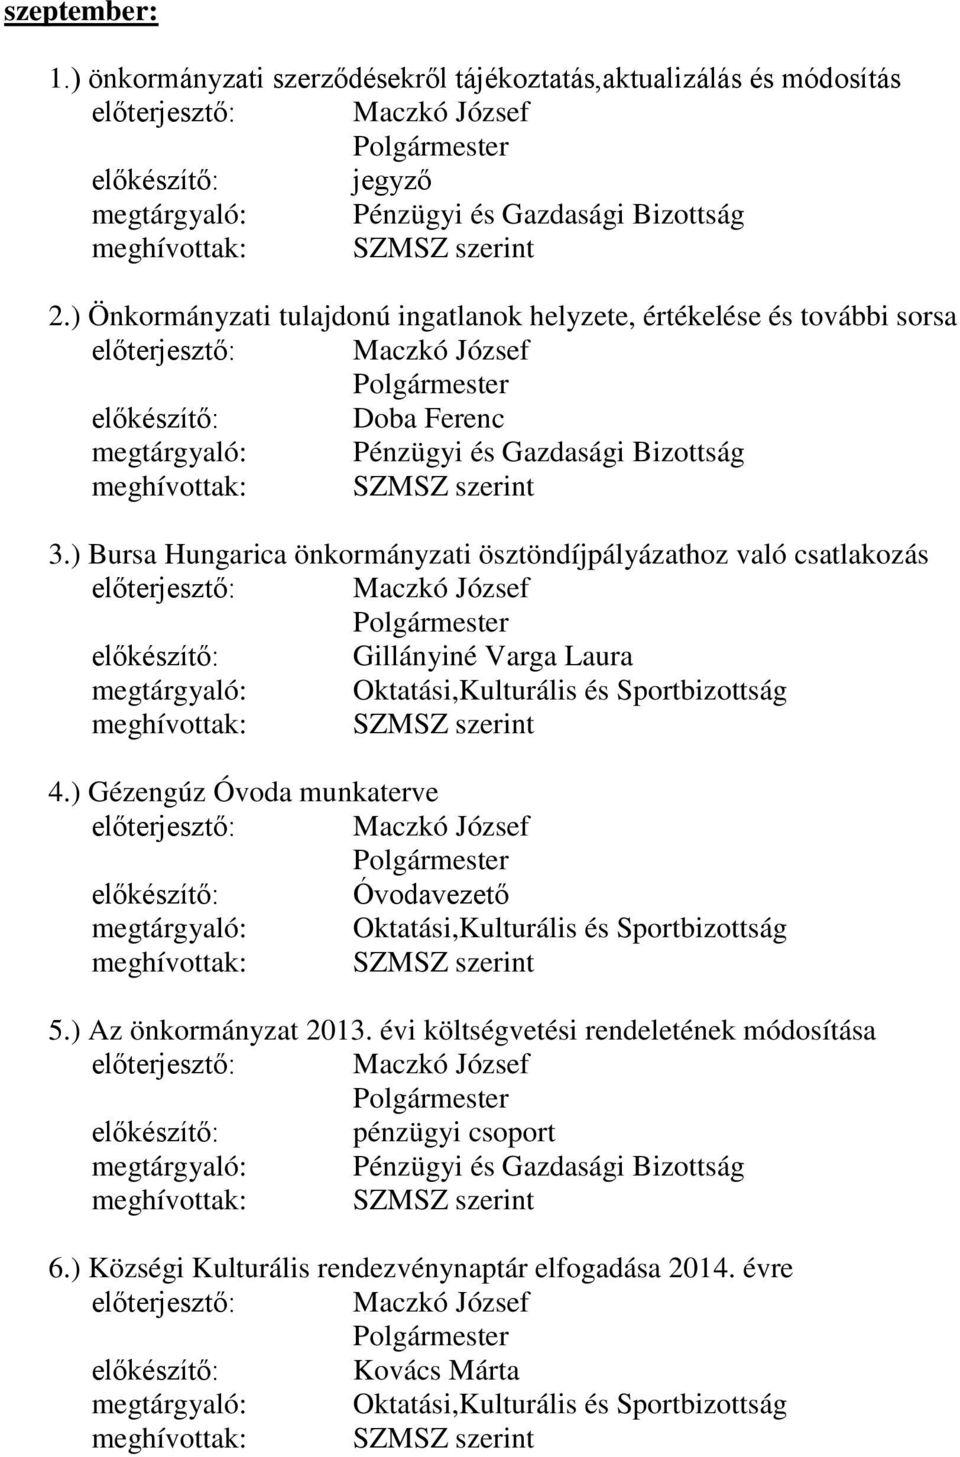 ) Bursa Hungarica önkormányzati ösztöndíjpályázathoz való csatlakozás előkészítő: Gillányiné Varga Laura 4.